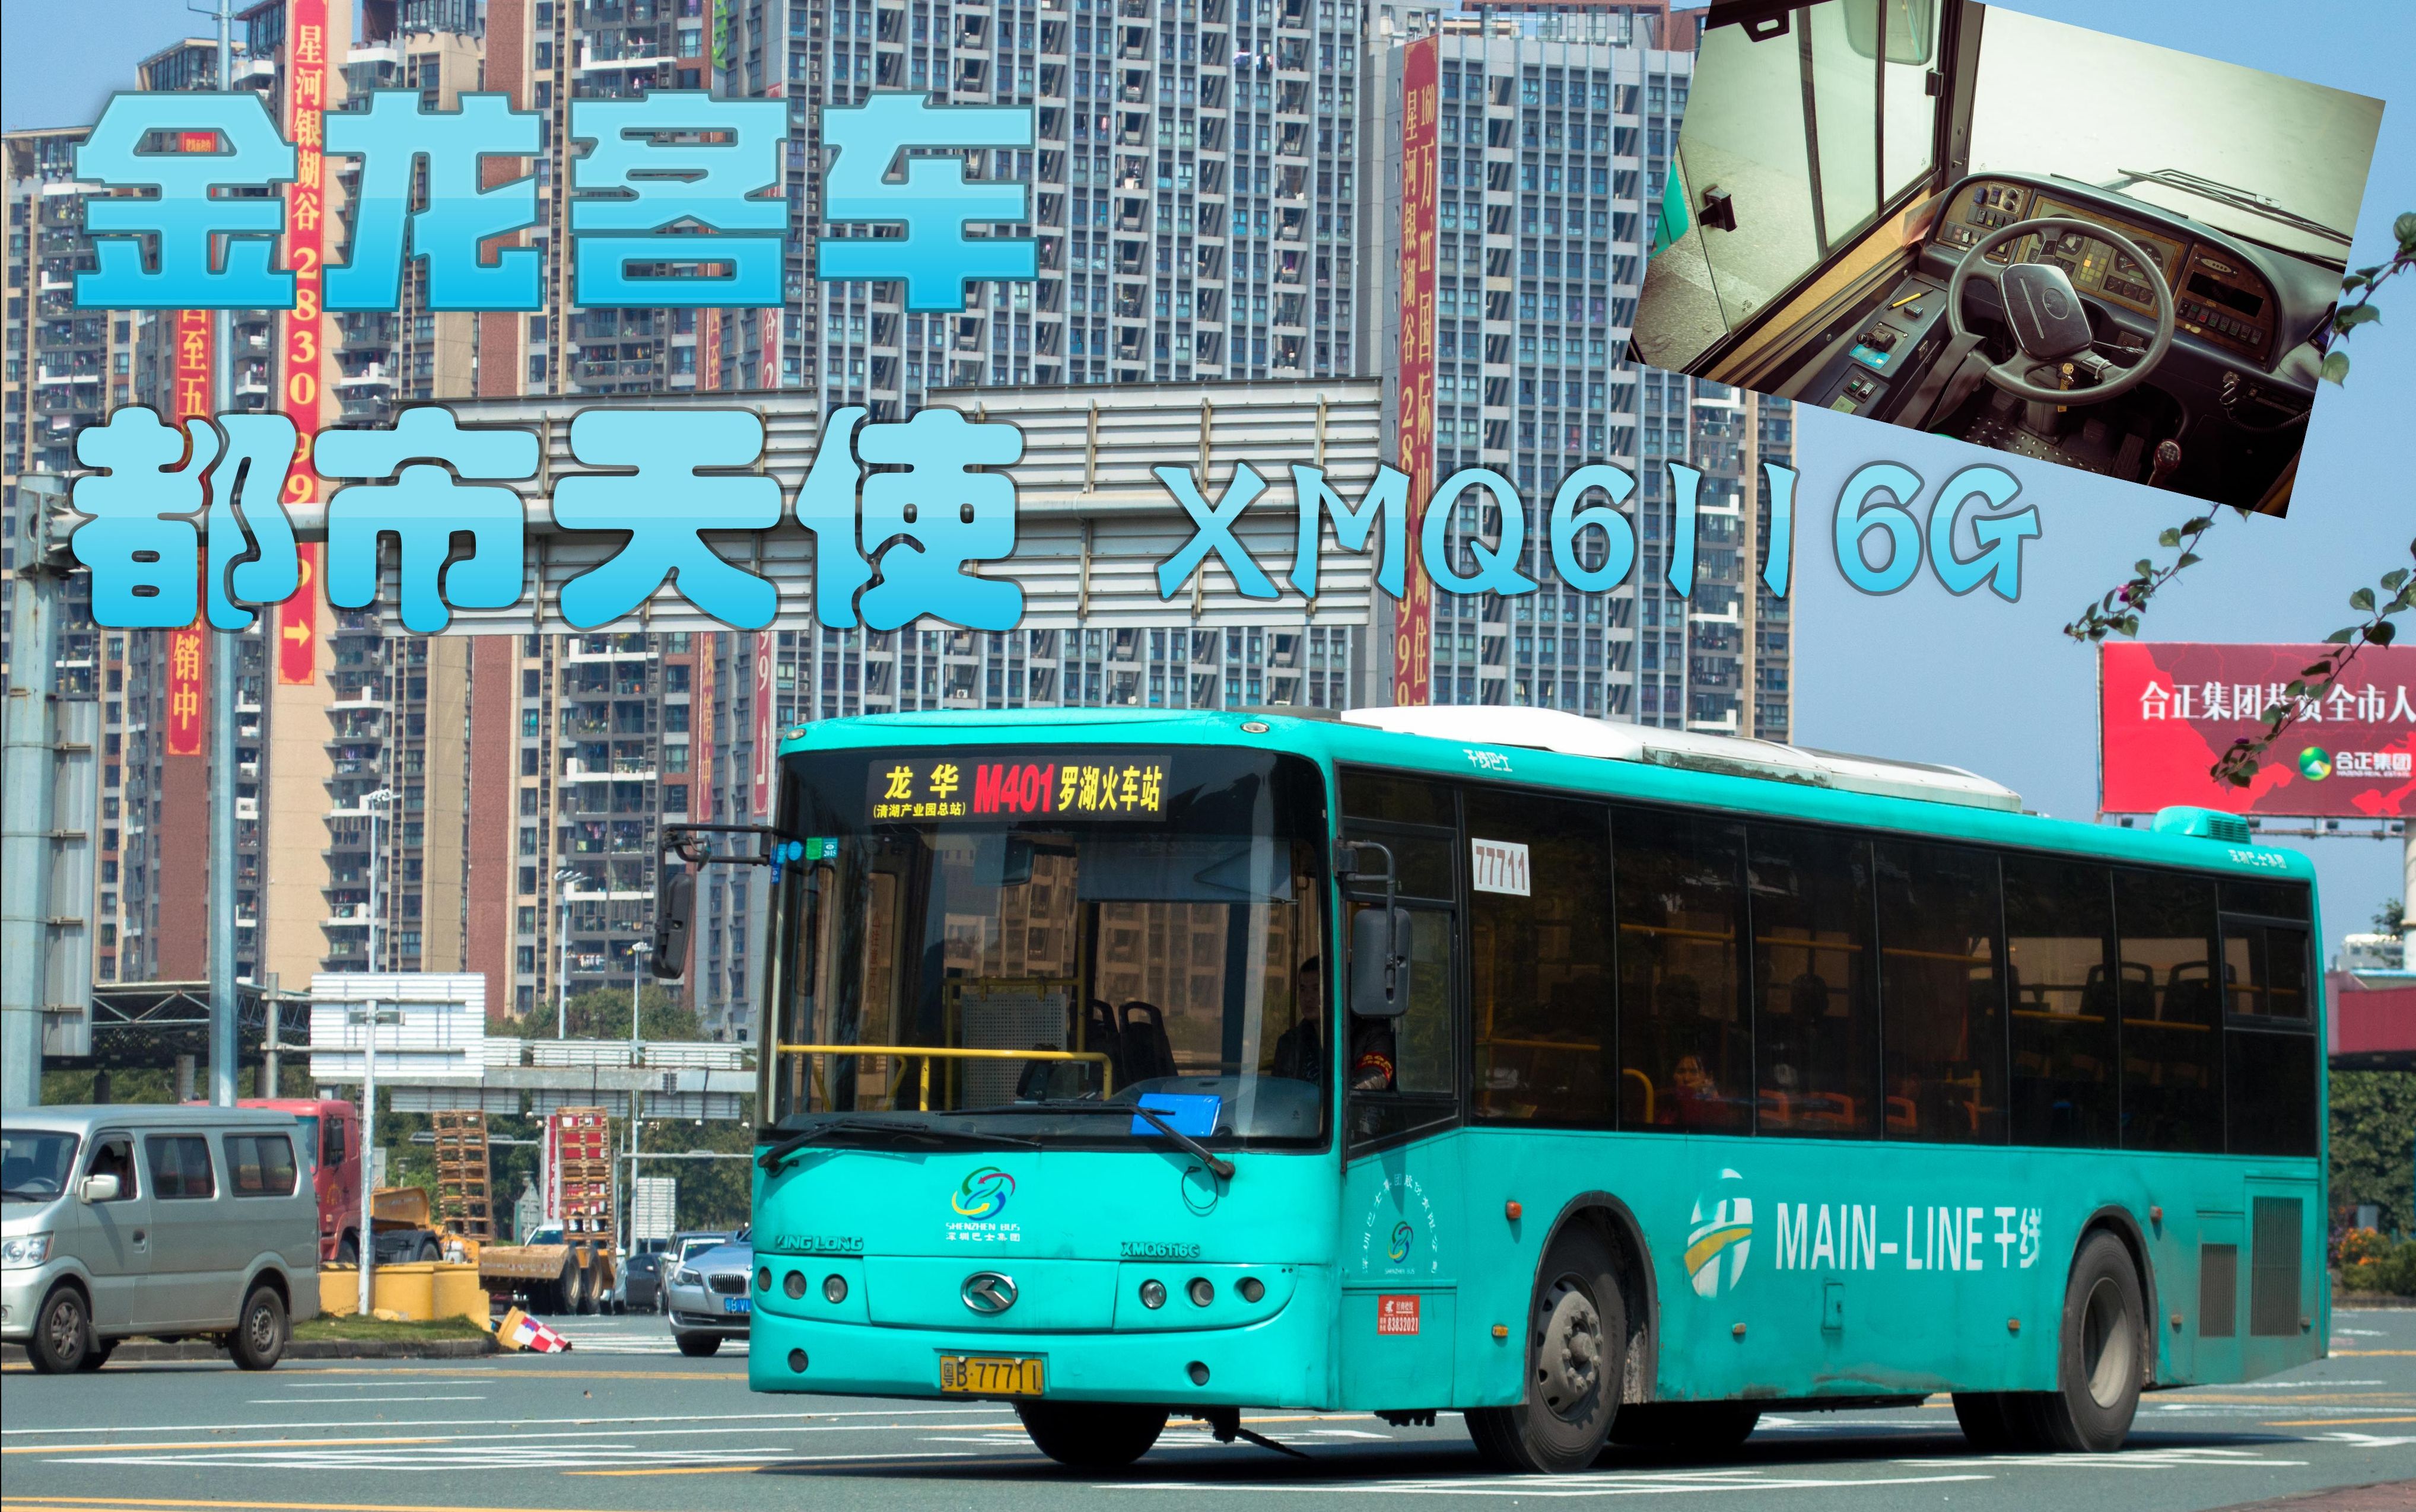 深圳巴士集团e2路金龙客车xmq6116g3龙岗公汽87头批次较早前录像